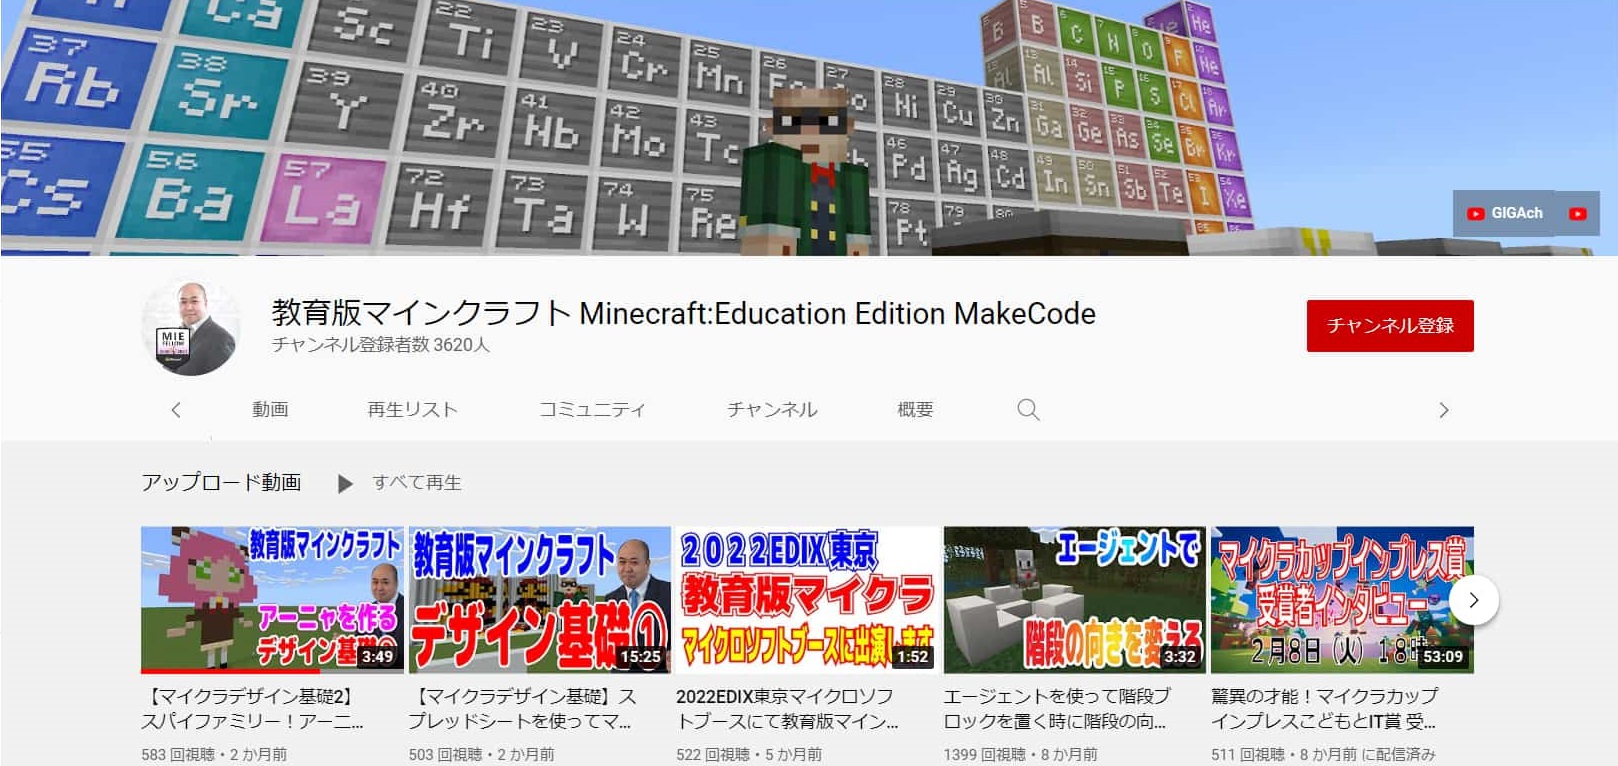 教育版マインクラフト Minecraft:Education Edition MakeCode YouTubeチャンネル